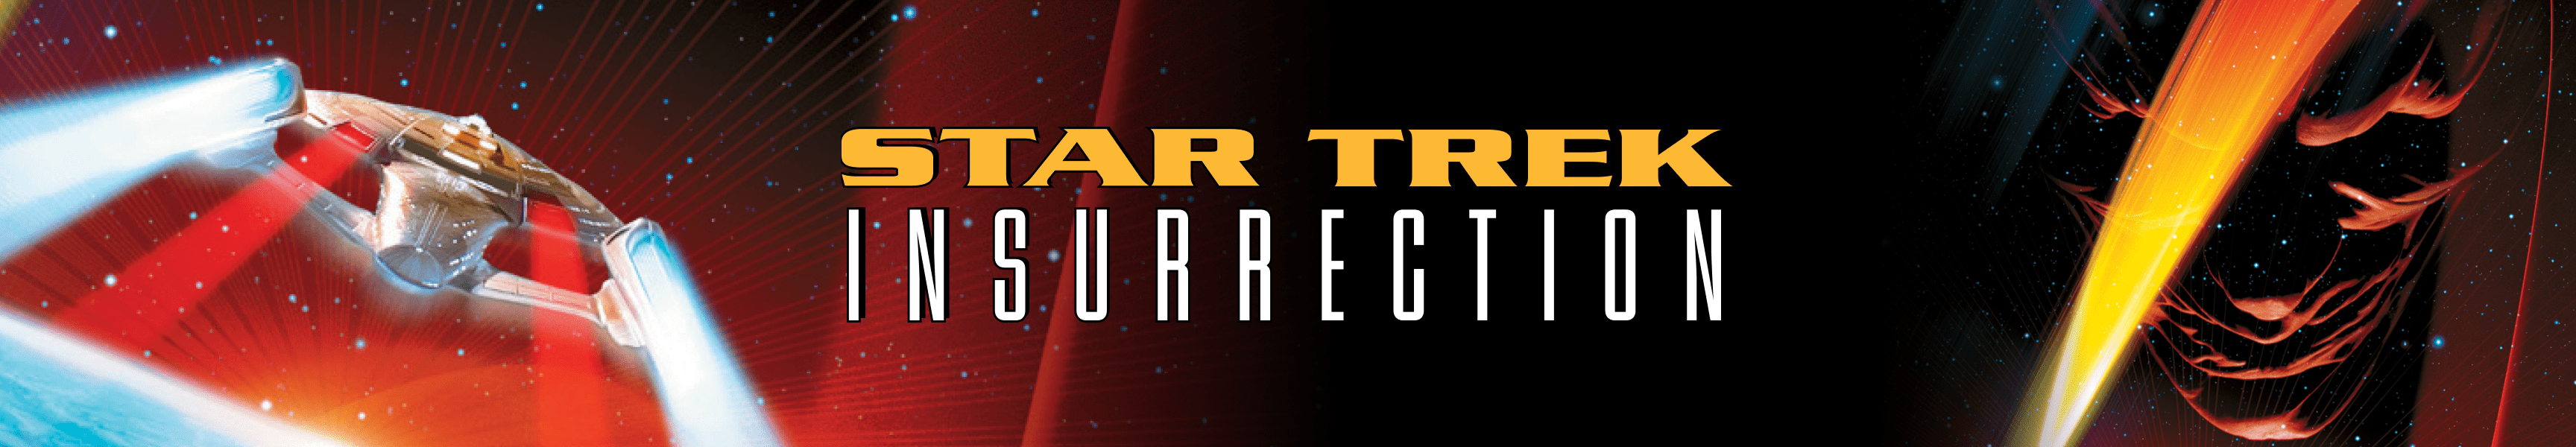 Insurrección de Star Trek